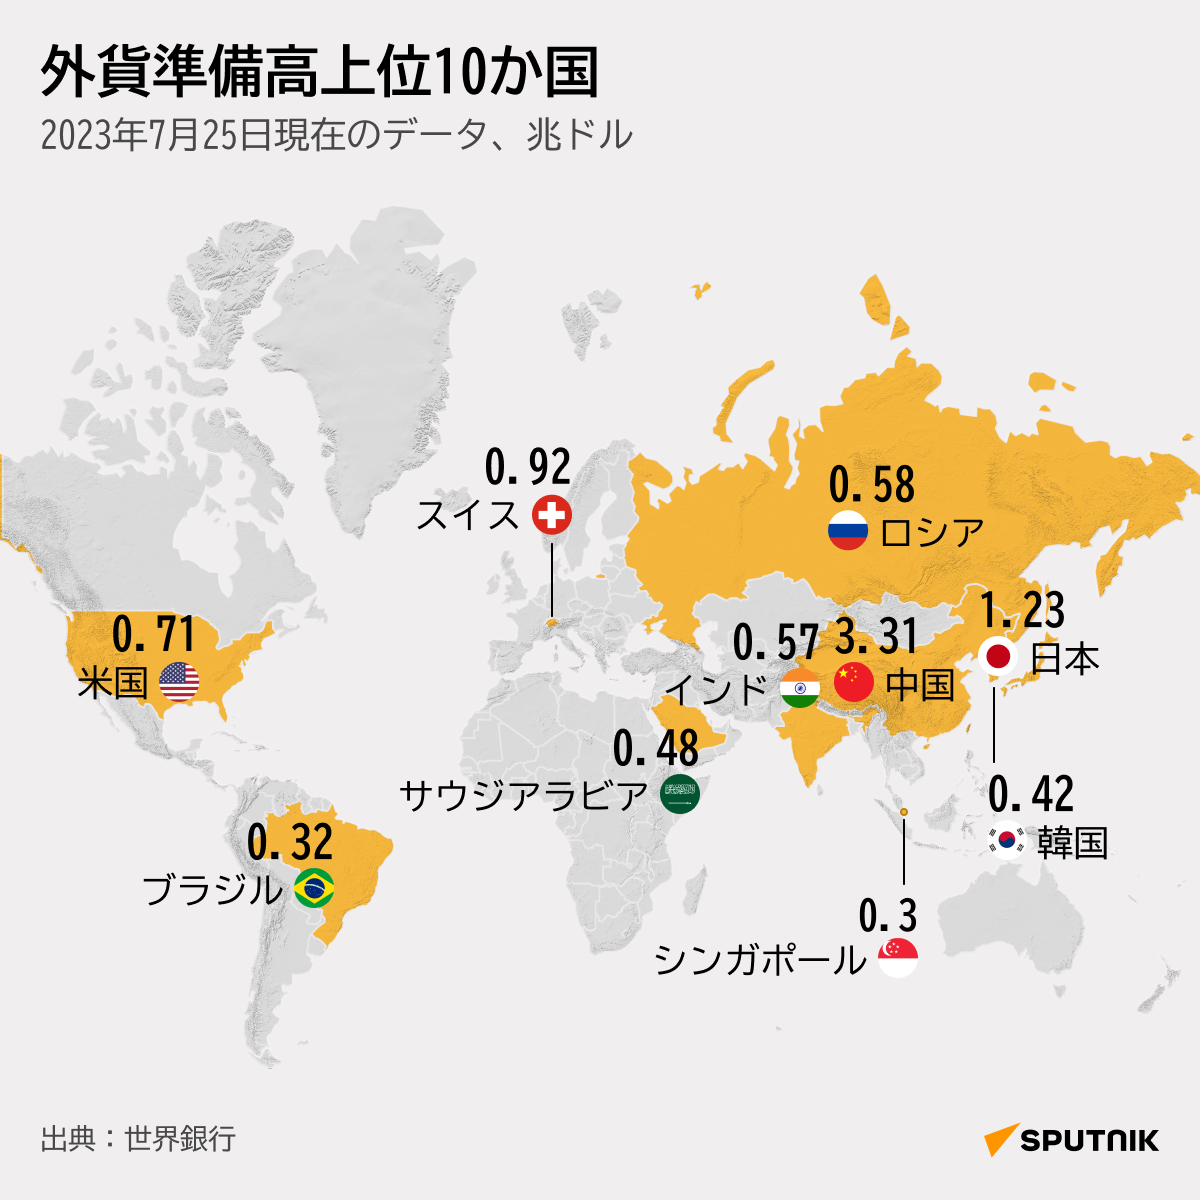 外貨準備高の上位10か国 - Sputnik 日本